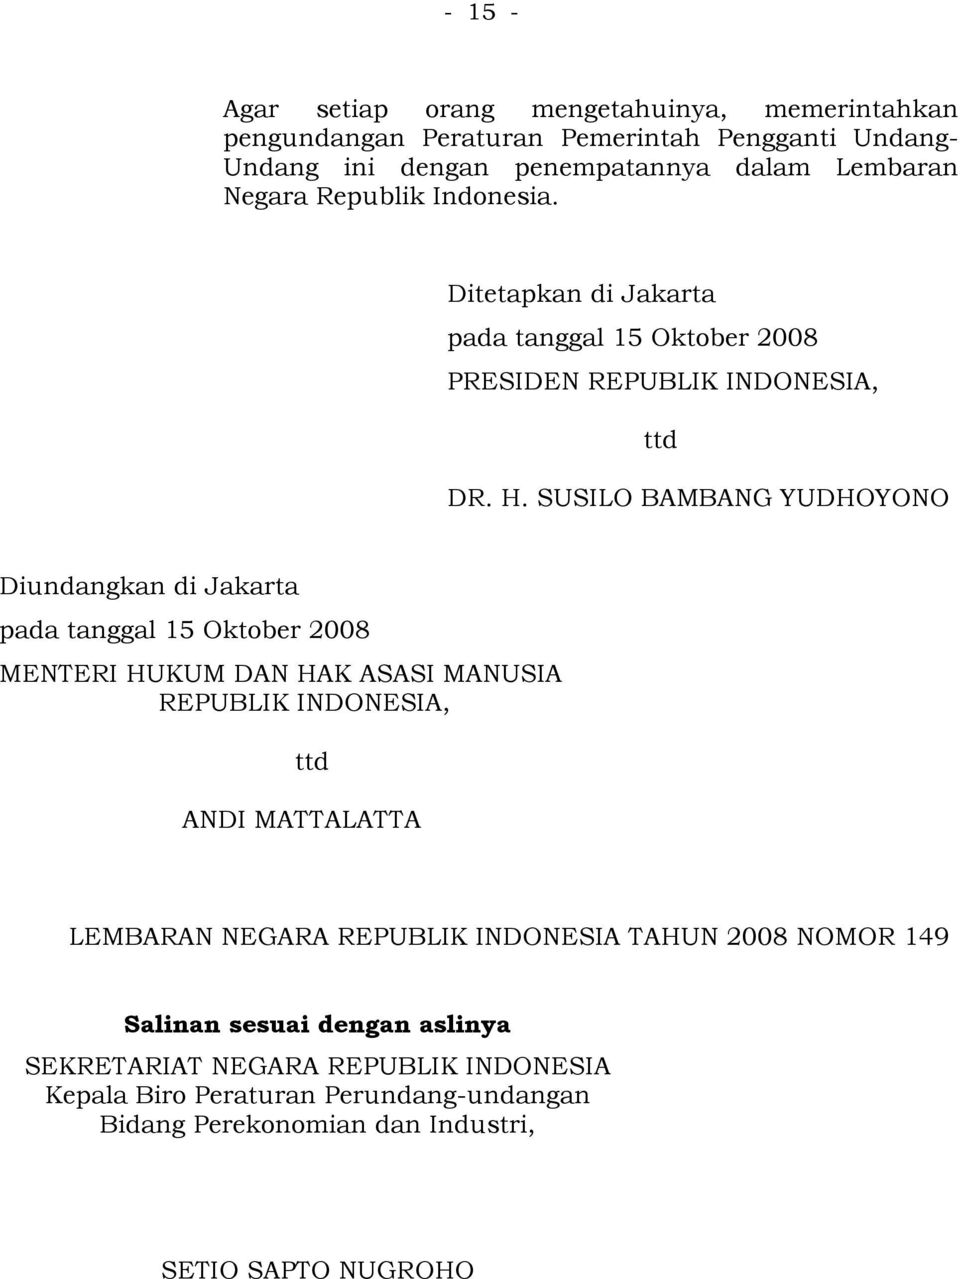 SUSILO BAMBANG YUDHOYONO Diundangkan di Jakarta pada tanggal 15 Oktober 2008 MENTERI HUKUM DAN HAK ASASI MANUSIA REPUBLIK INDONESIA, ttd ANDI MATTALATTA